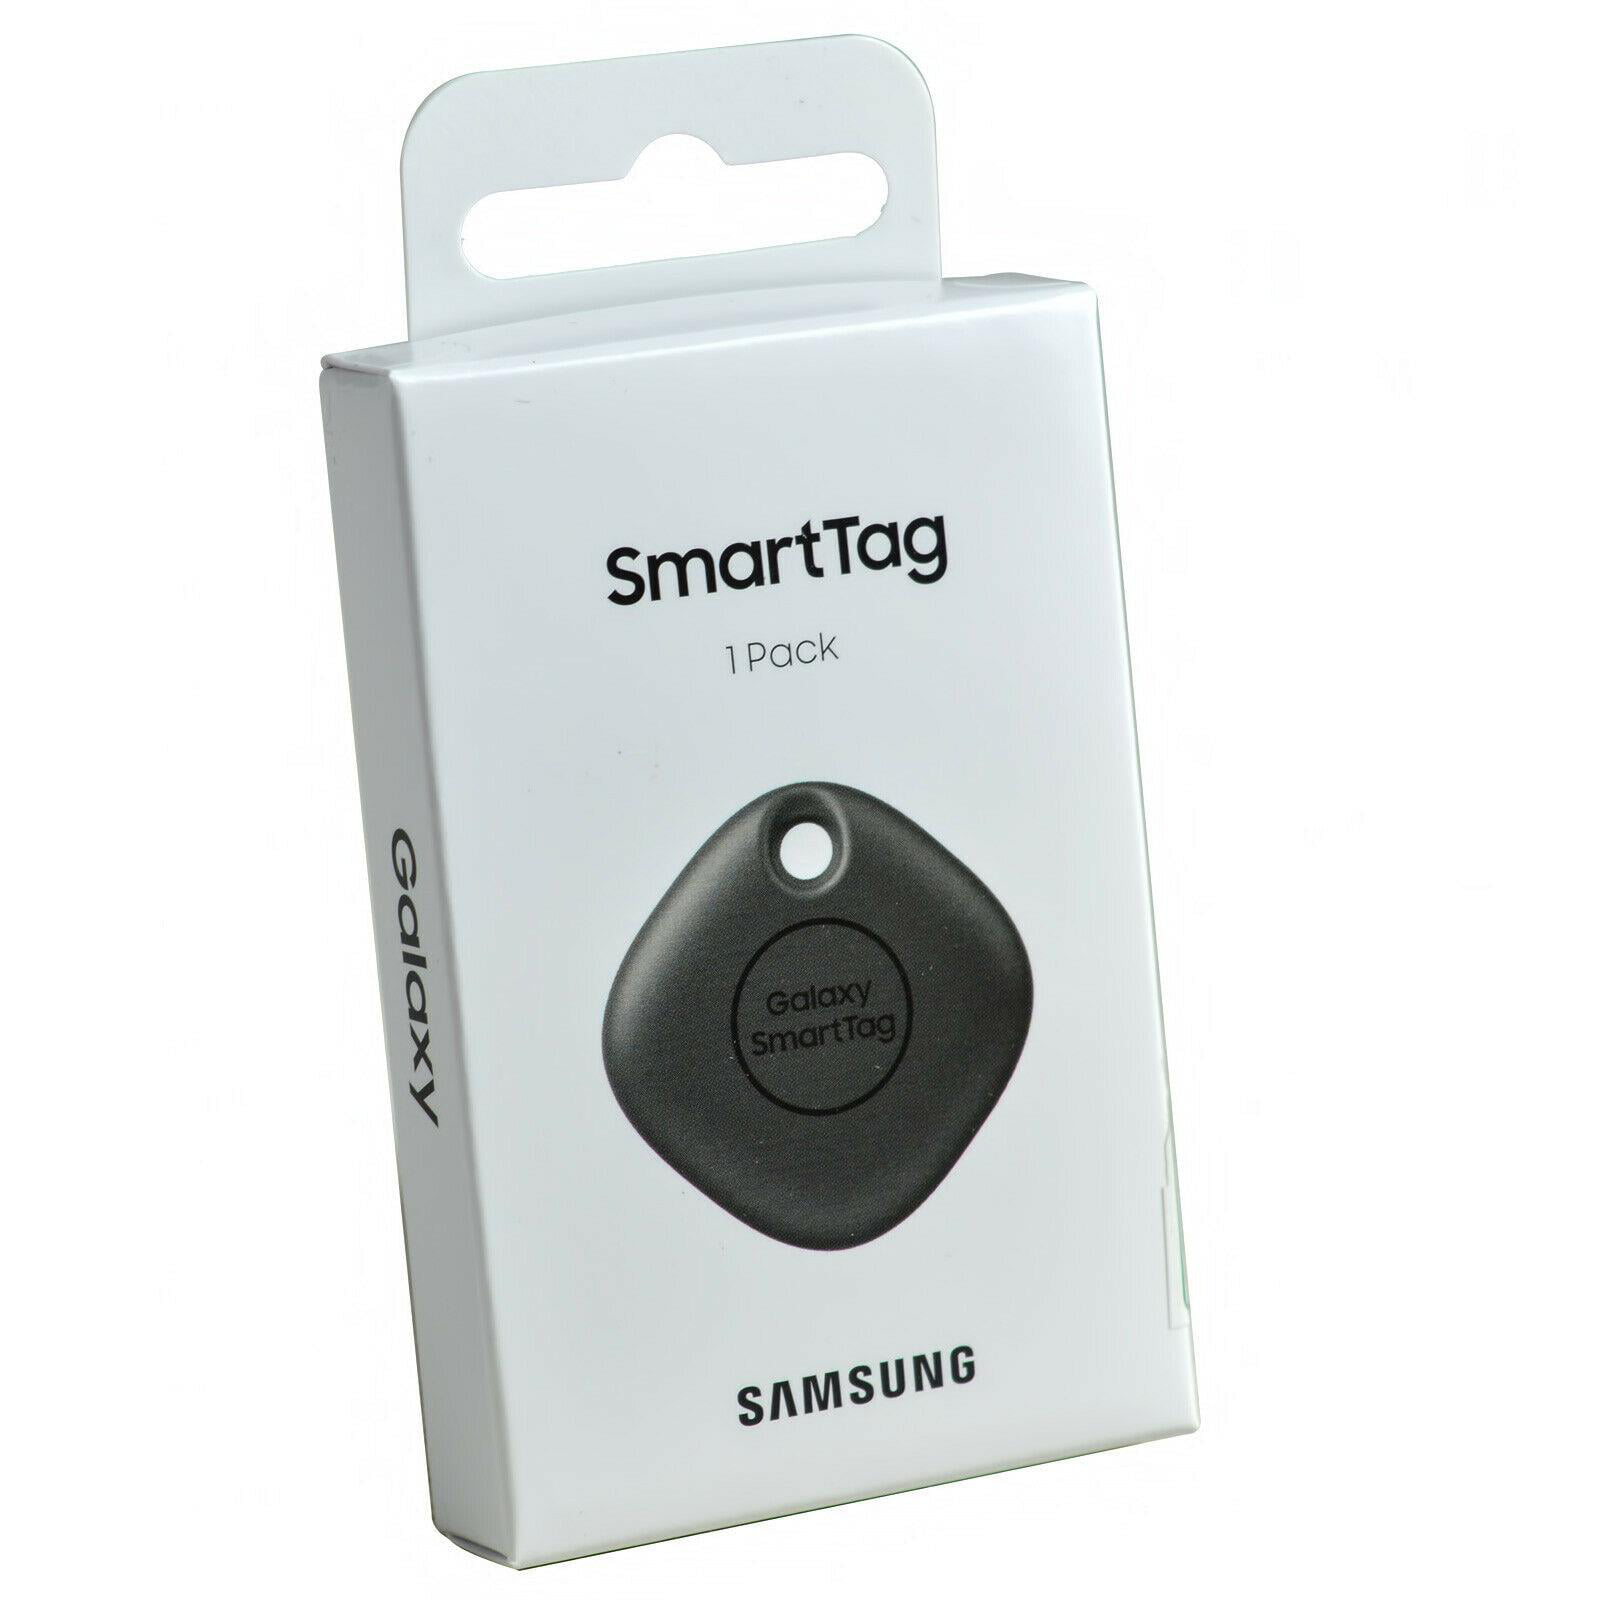 Official Samsung Galaxy SmartTag Bluetooth Item/Key Finder - 1